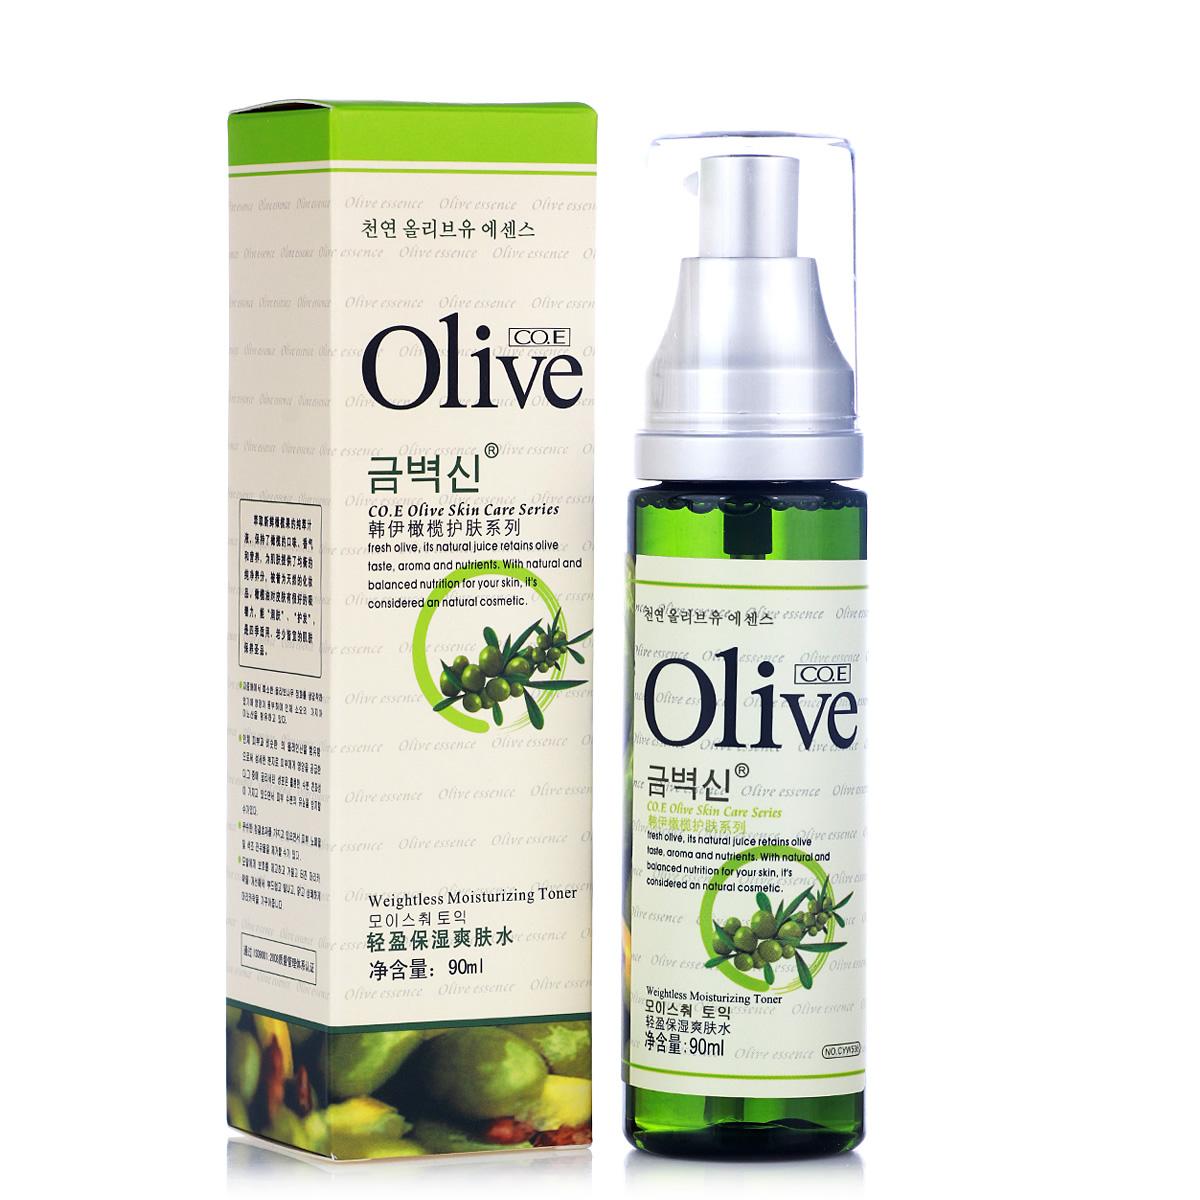 olive品加盟和其他美容加盟品牌有哪些区别？olive品品牌优势在哪里？